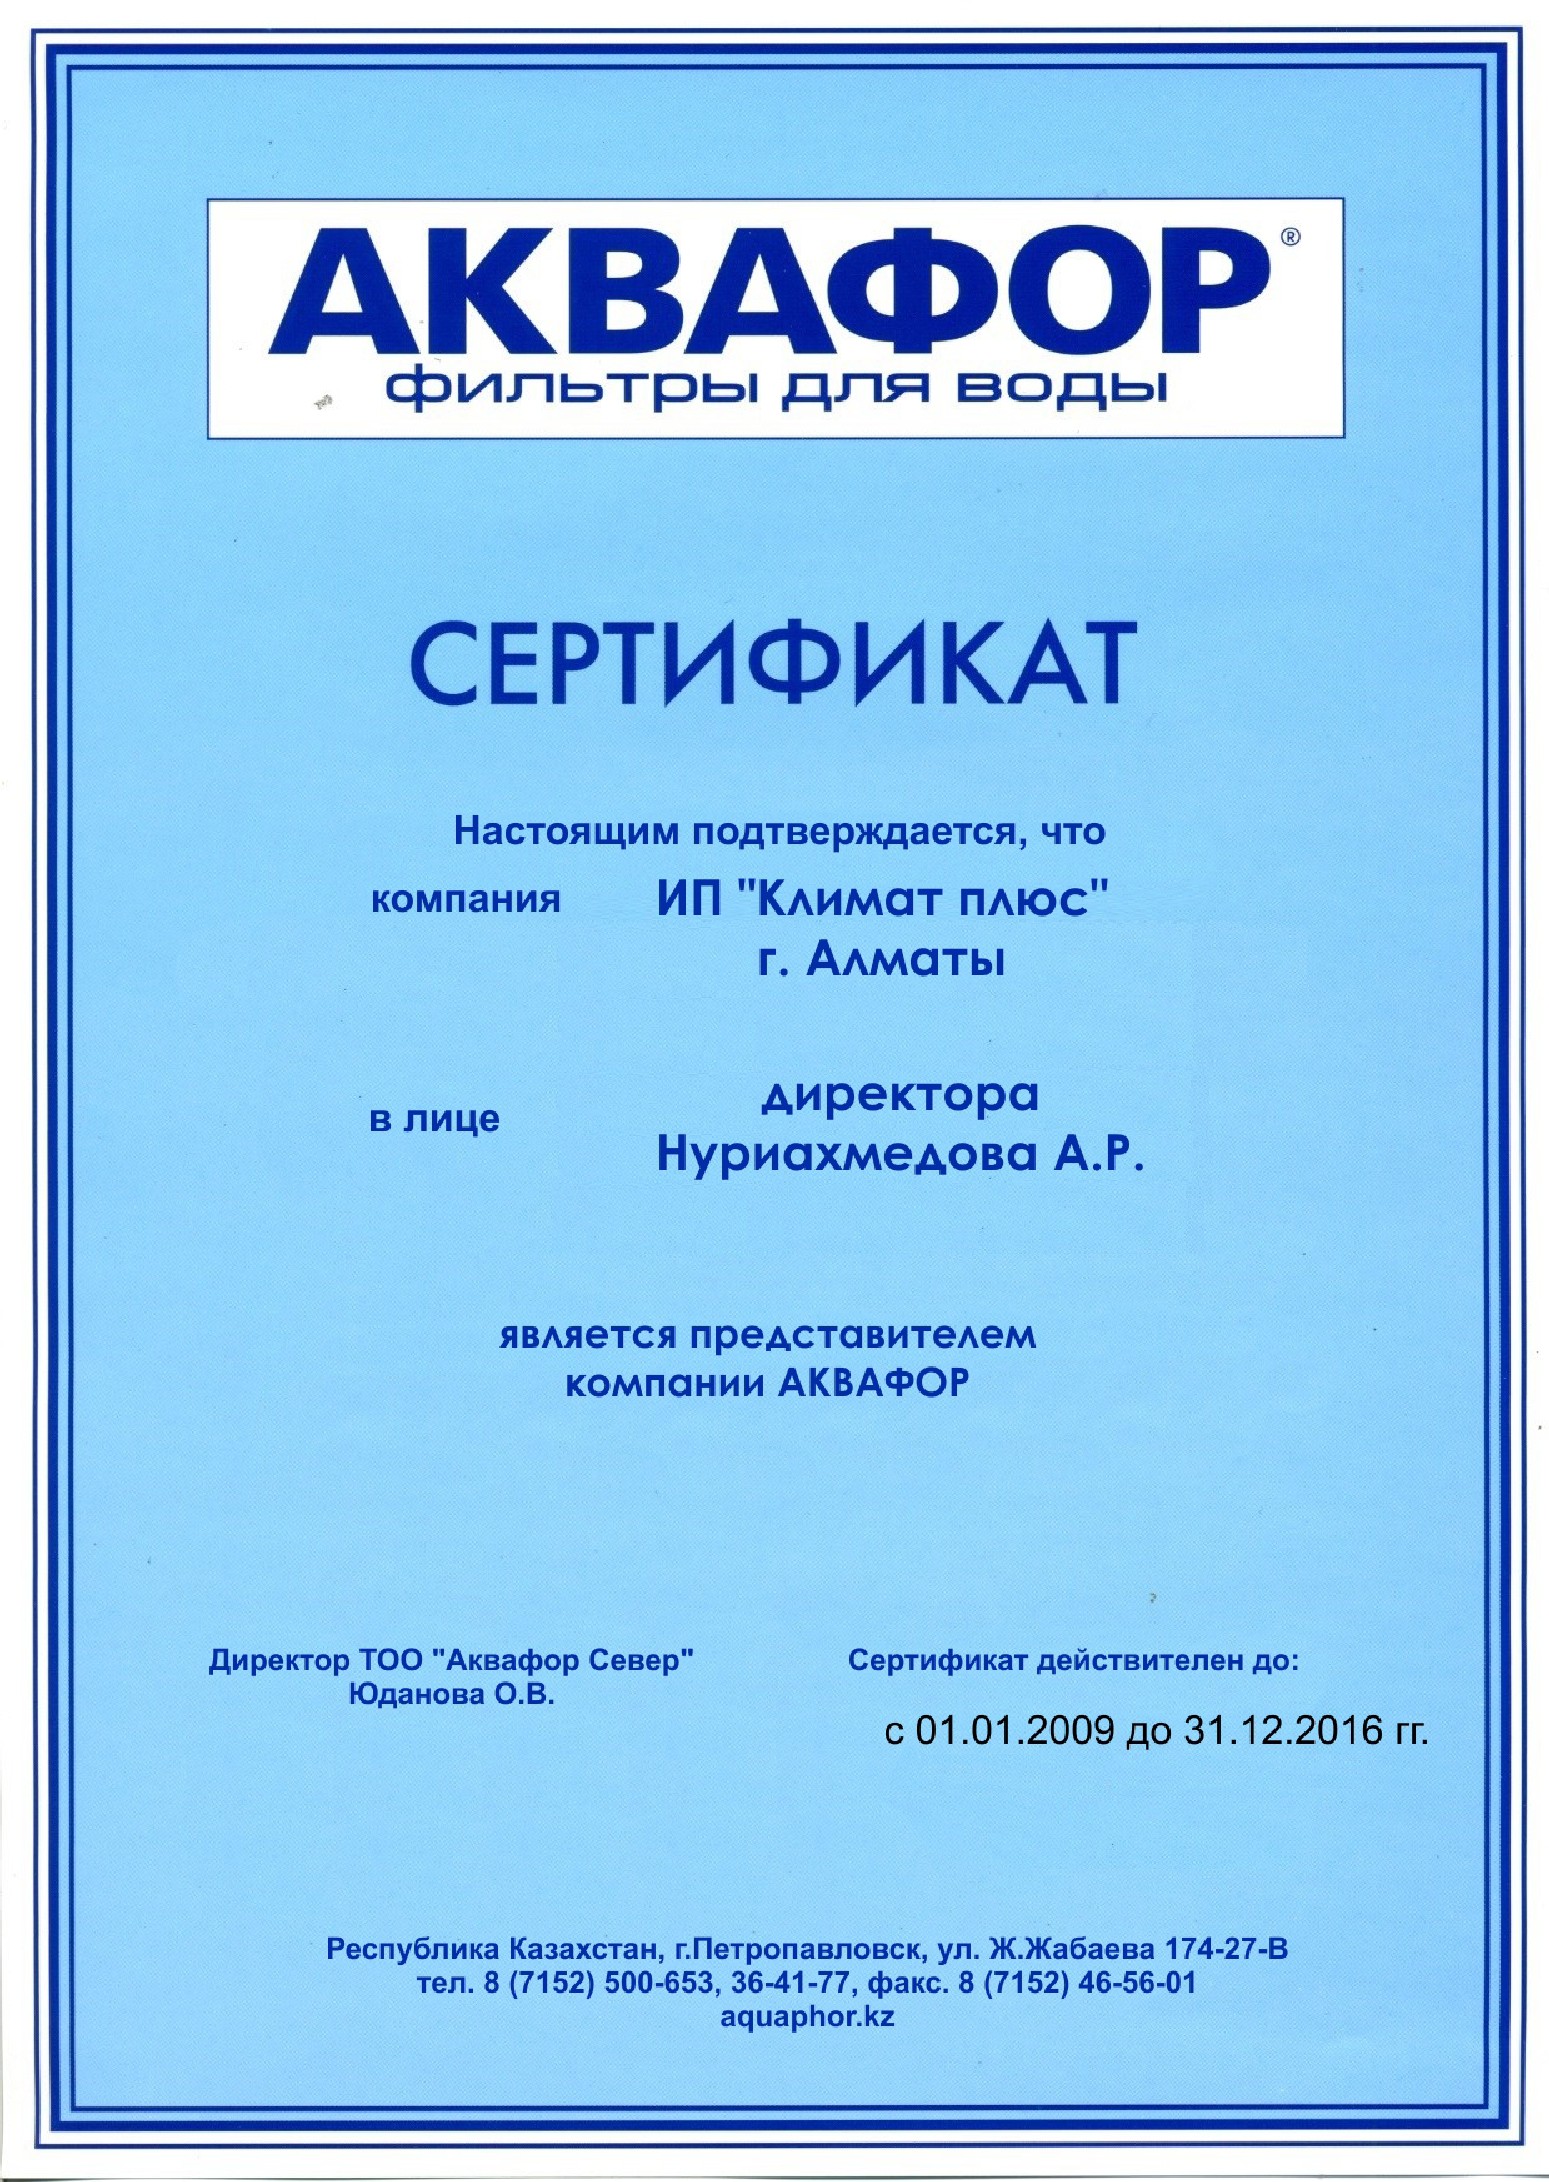 sertifikat aquaphor 2016